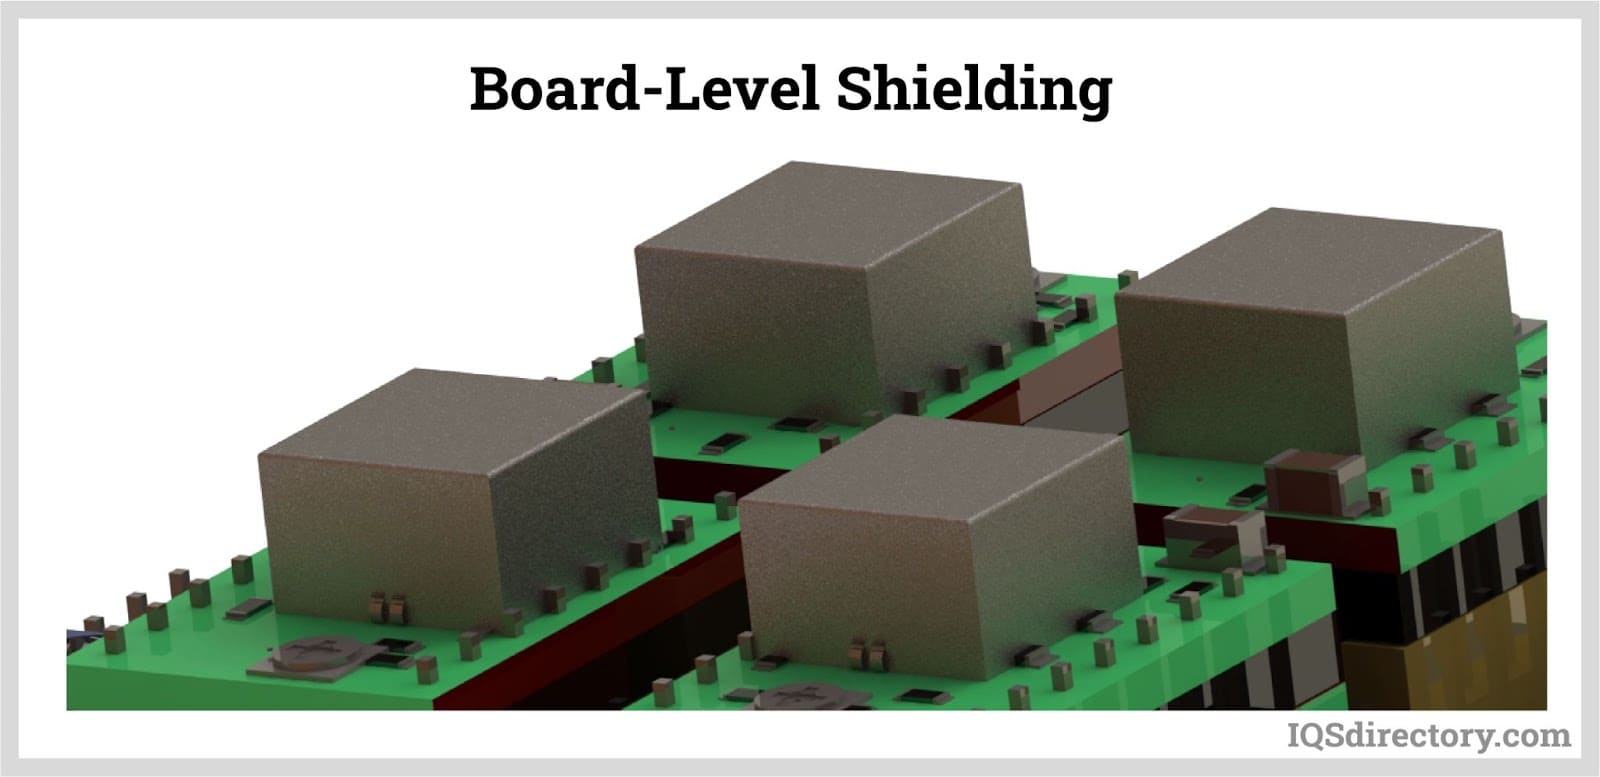 Board-Level Shielding